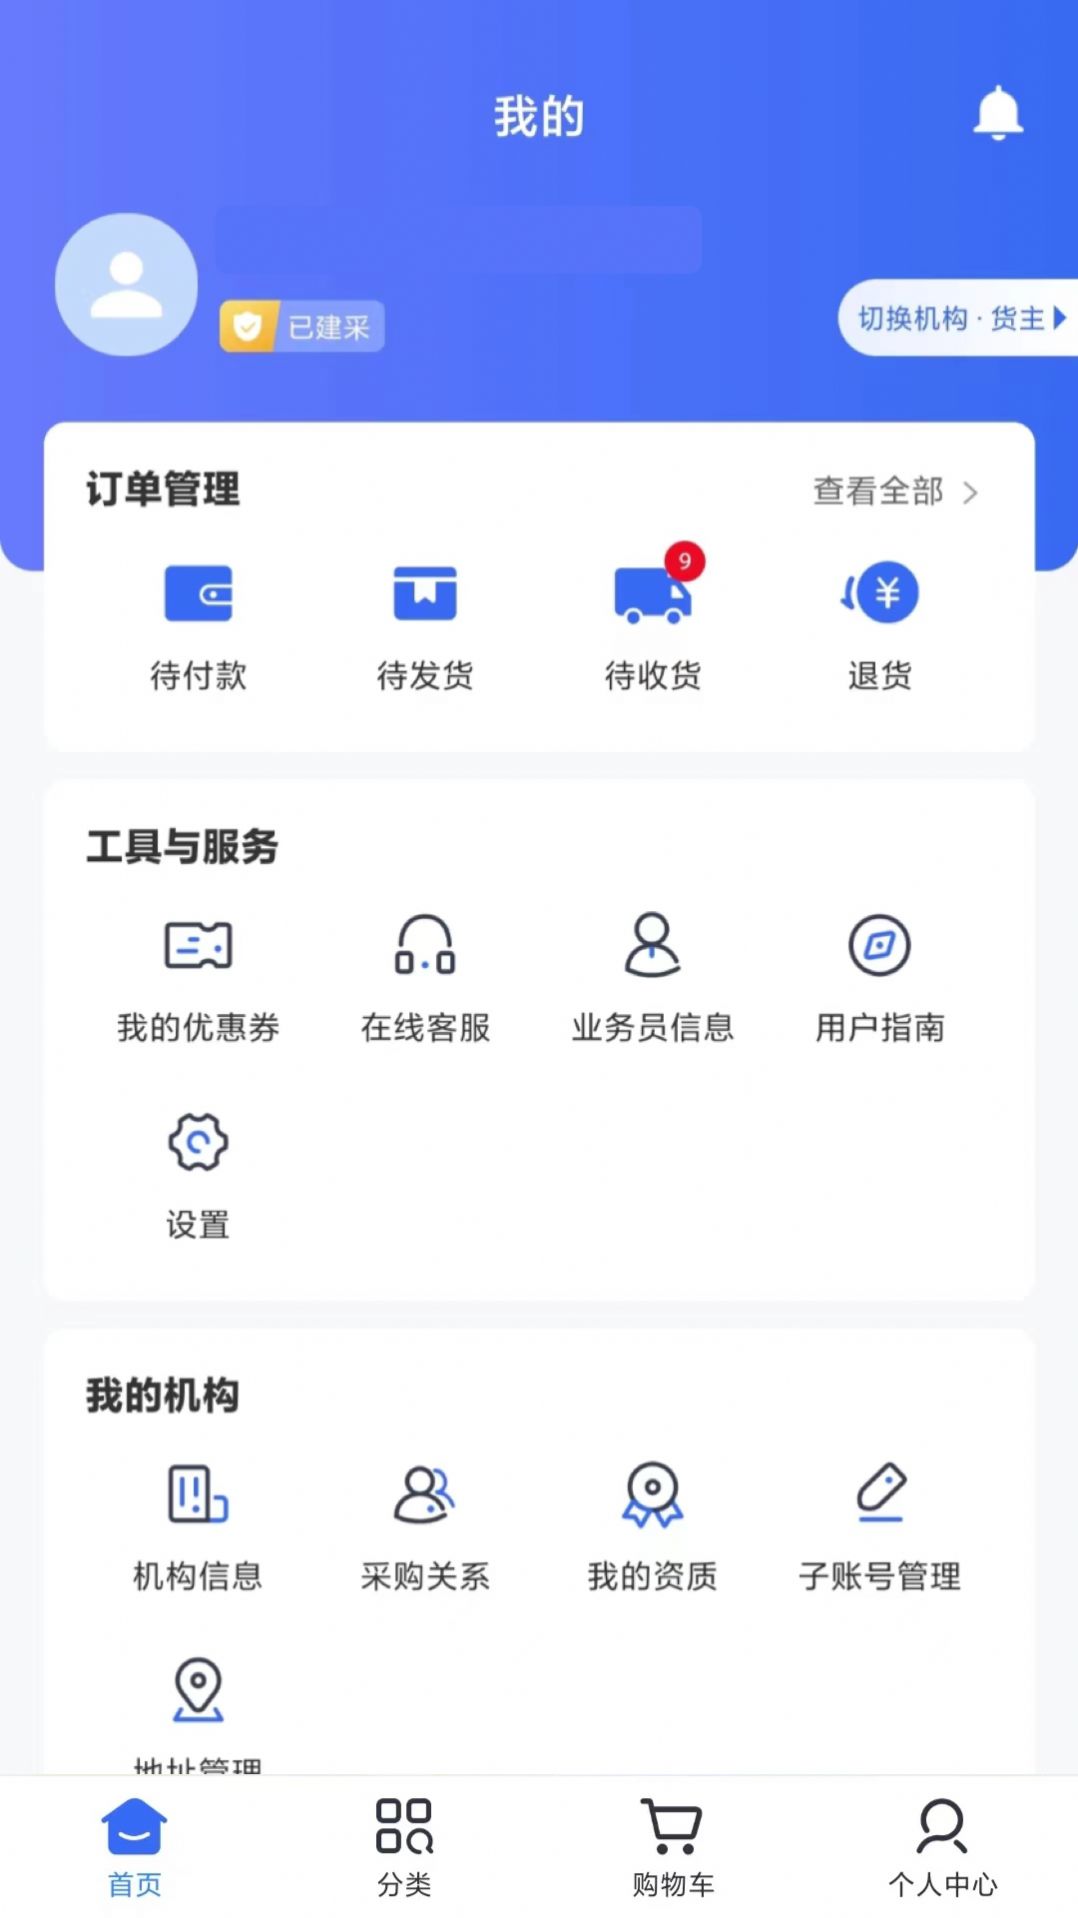 健之桥医药网app